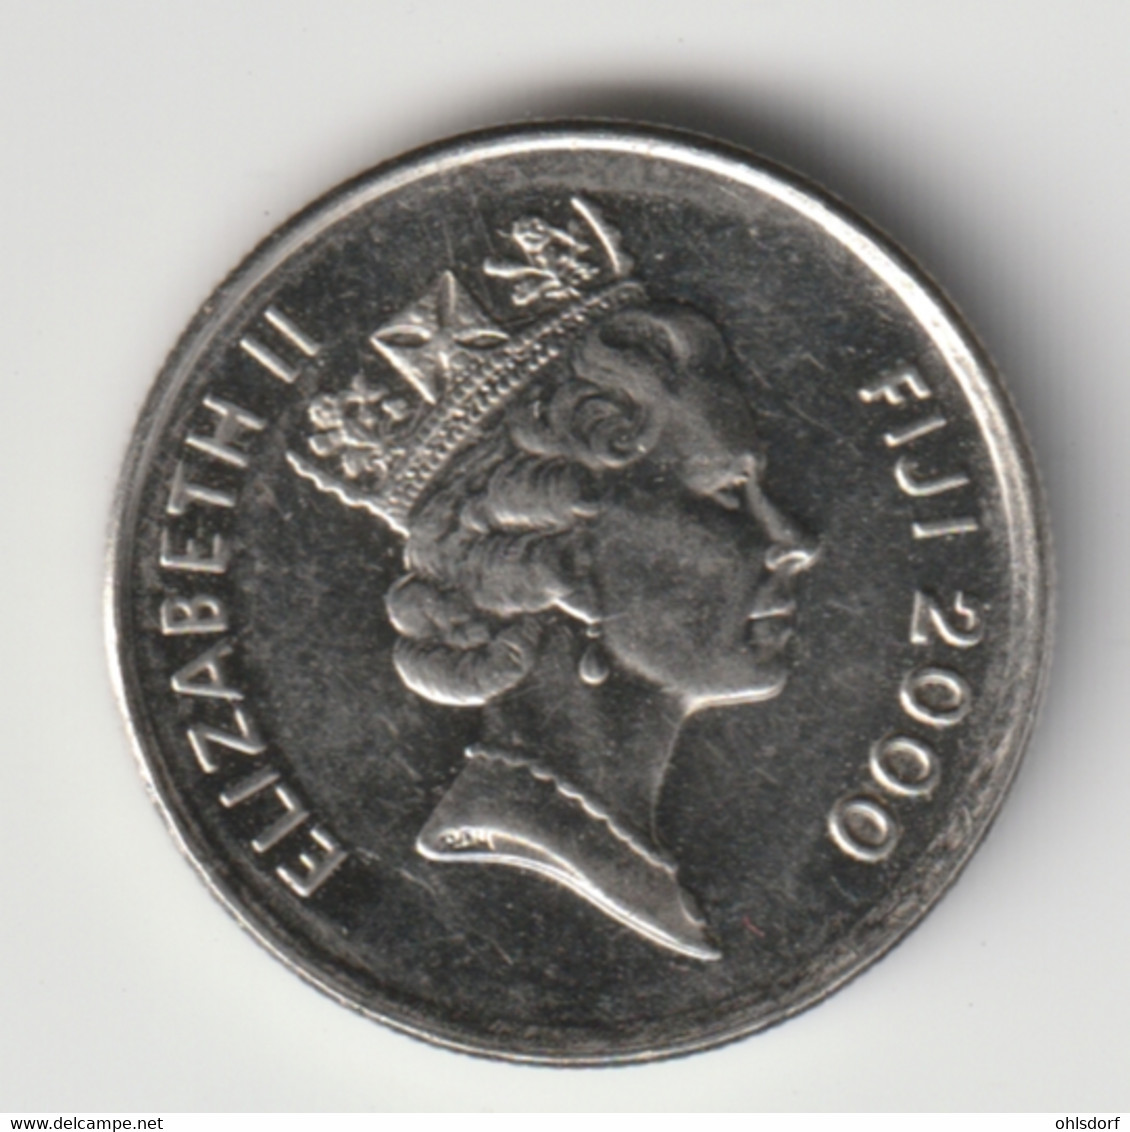 FIJI 2000: 5 Cents, KM 51a